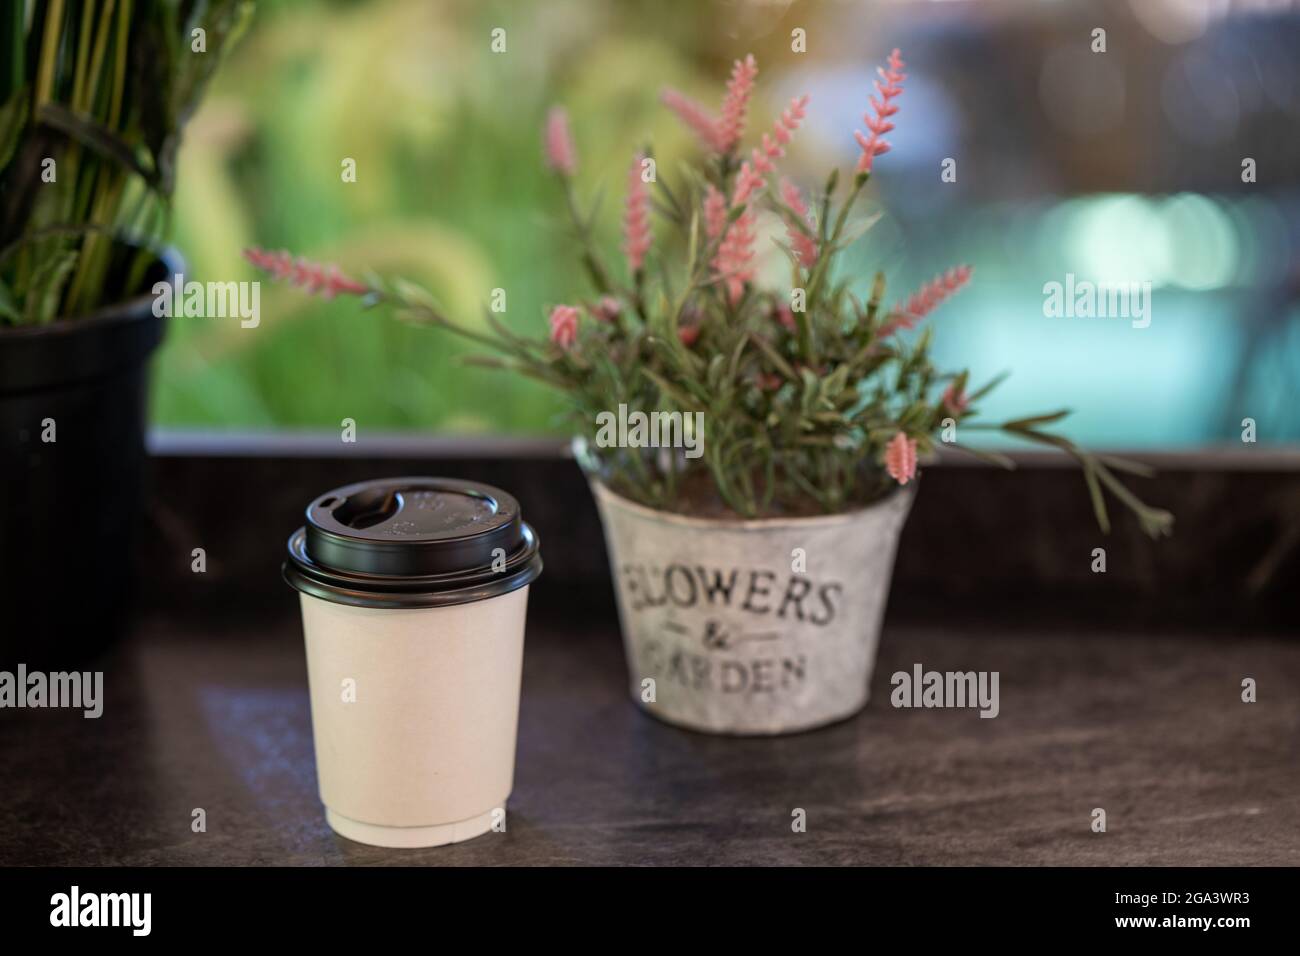 Tasse Kaffee neben einer Blumentopf auf dem Tisch Stockfotografie - Alamy